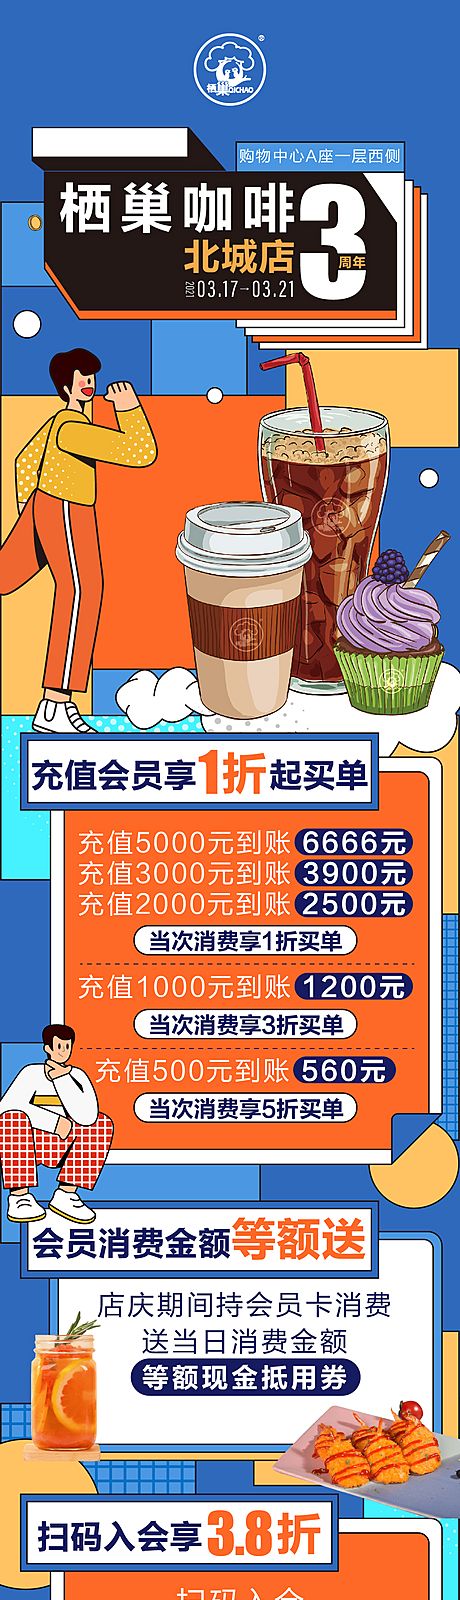 仙图网-咖啡店三周年活动海报